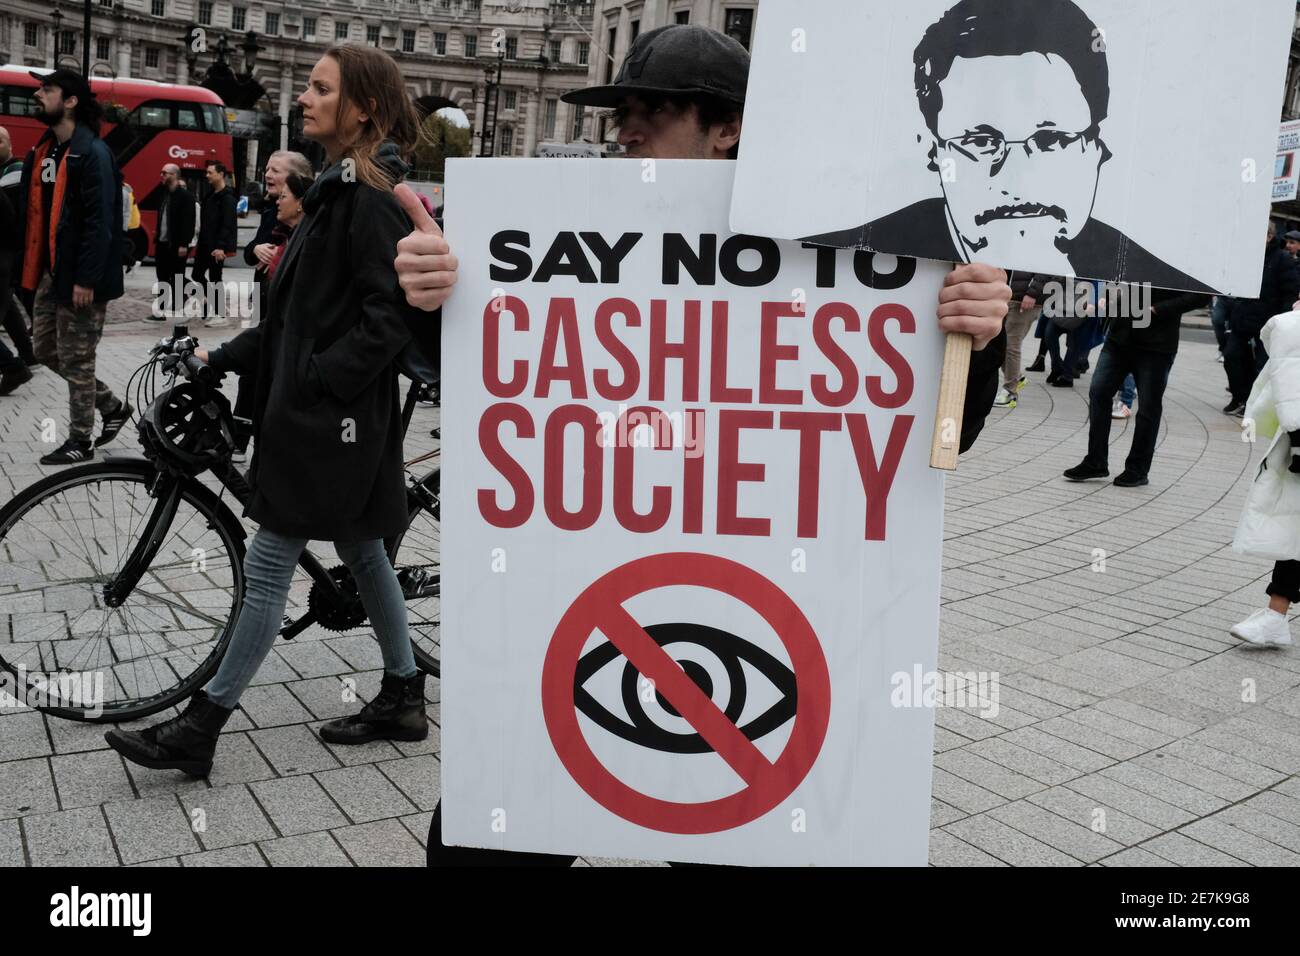 LONDRES, LE 24 OCTOBRE 2020 : un homme protestant contre une société sans espèces, lors d'une manifestation anti-verrouillage. Banque D'Images